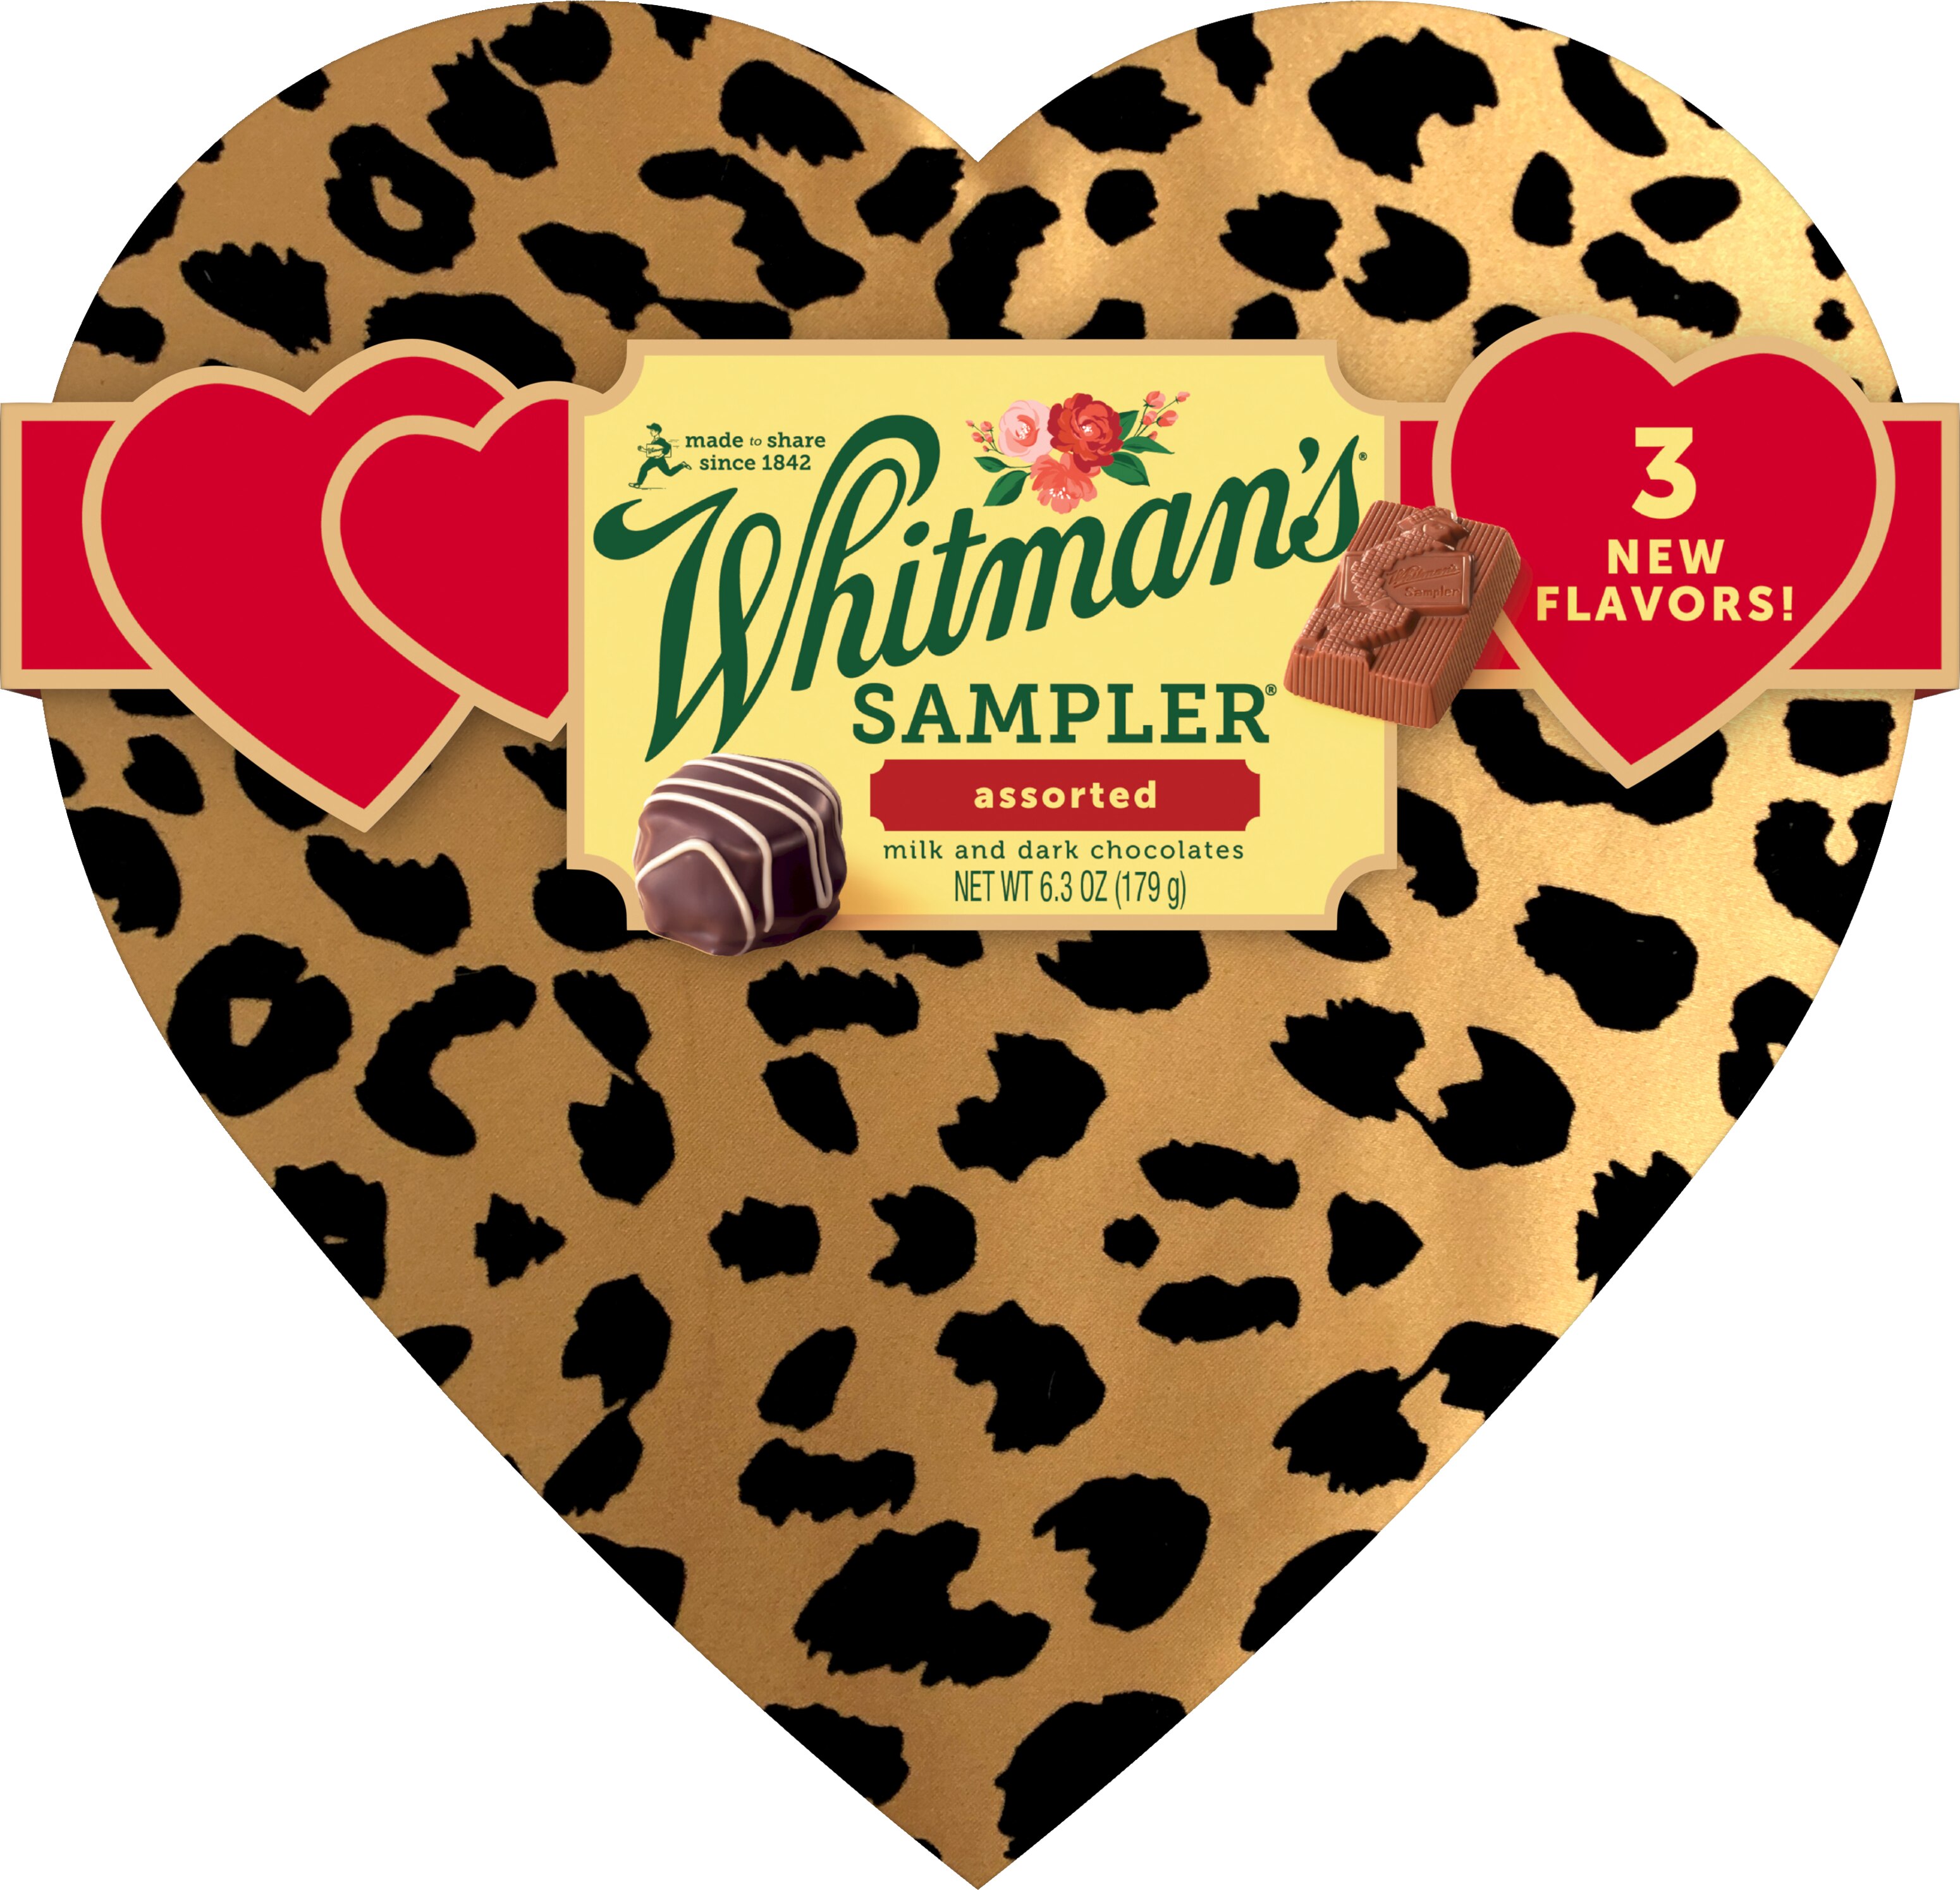 Whitman's Sampler Valentine's Day Cheetah Heart Assorted Milk Chocolate & Dark Chocolate Gift Box, 6.25 o